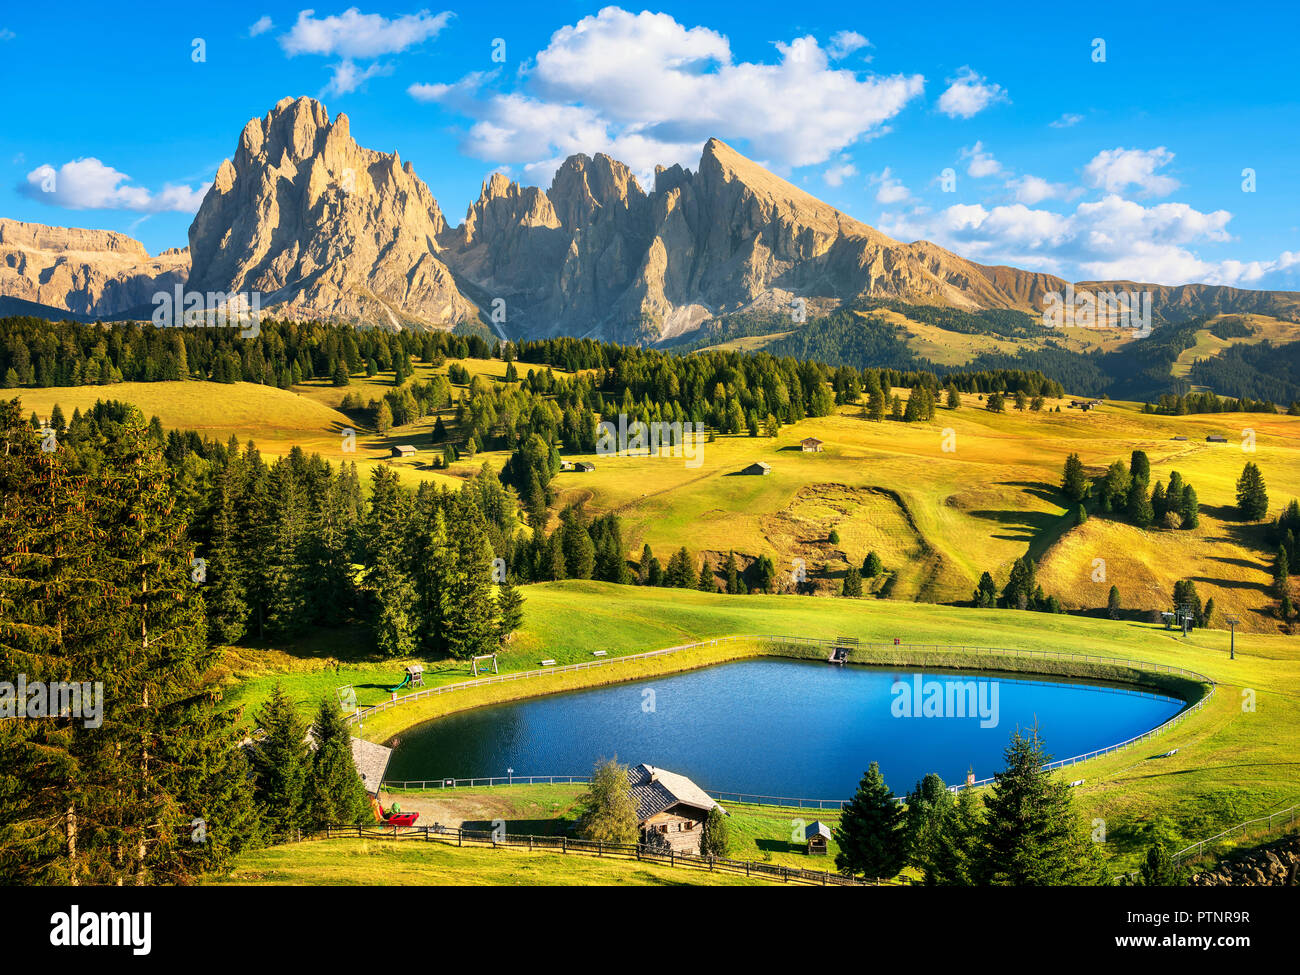 See und Berge Adige Seiser oder Sassopiato, Alpen bei Alm, Stockfotografie Alm Seiser Alamy Langkofel und Sonnenuntergang, - Tirol, Dolomiten Europa Alto Sud Trentino Italien